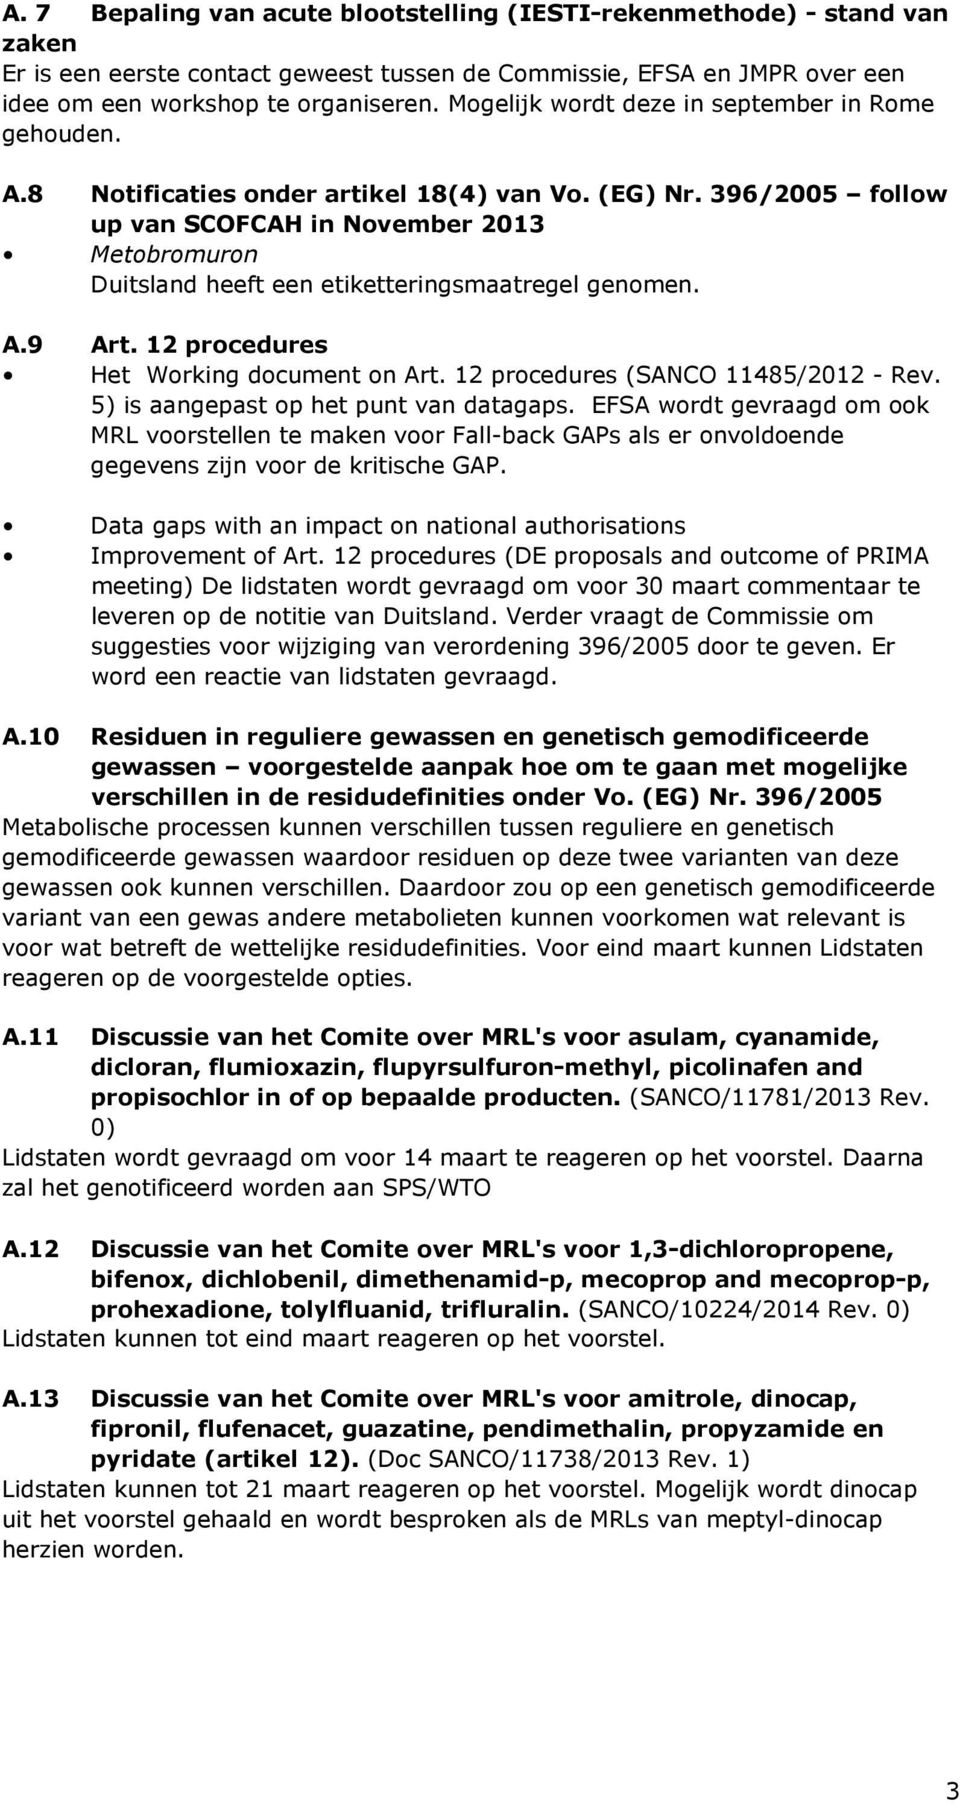 396/2005 follow up van SCOFCAH in November 2013 Metobromuron Duitsland heeft een etiketteringsmaatregel genomen. A.9 Art. 12 procedures Het Working document on Art.